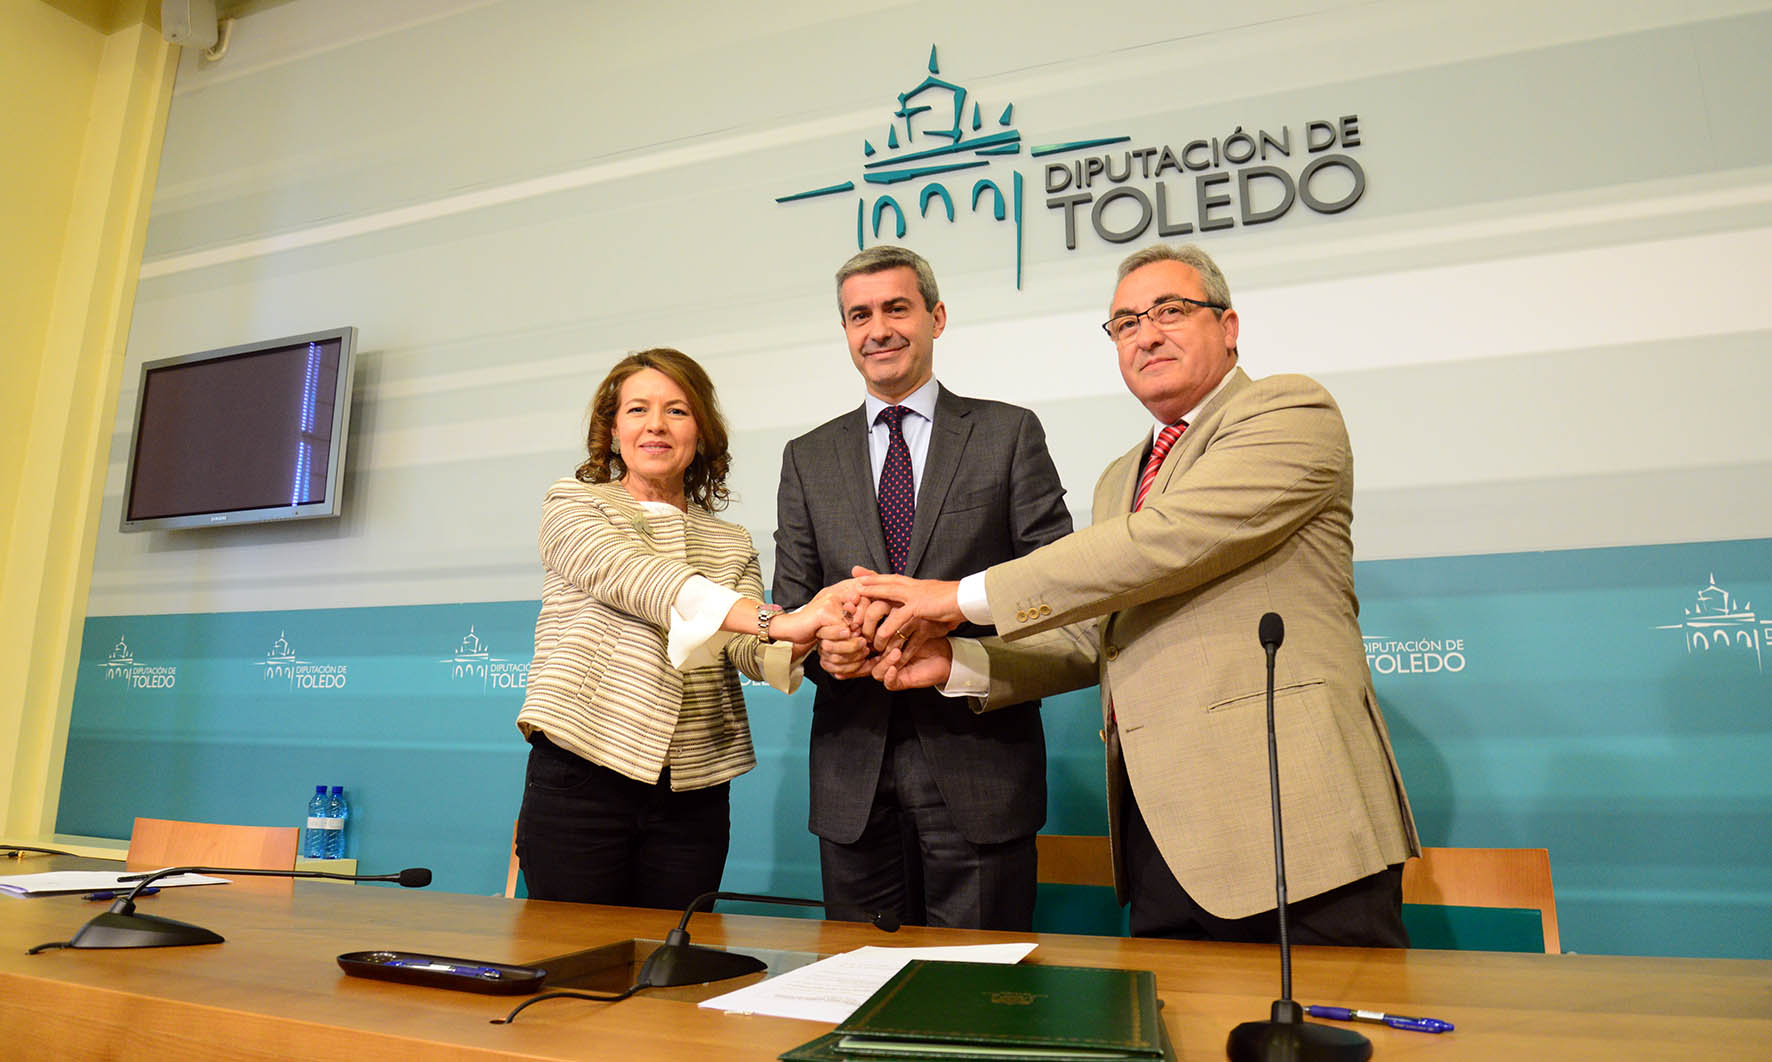 Convenio entre la Diputación de Toledo, Junta de Comunidades y Cruz Roja sobre pobreza infantil.